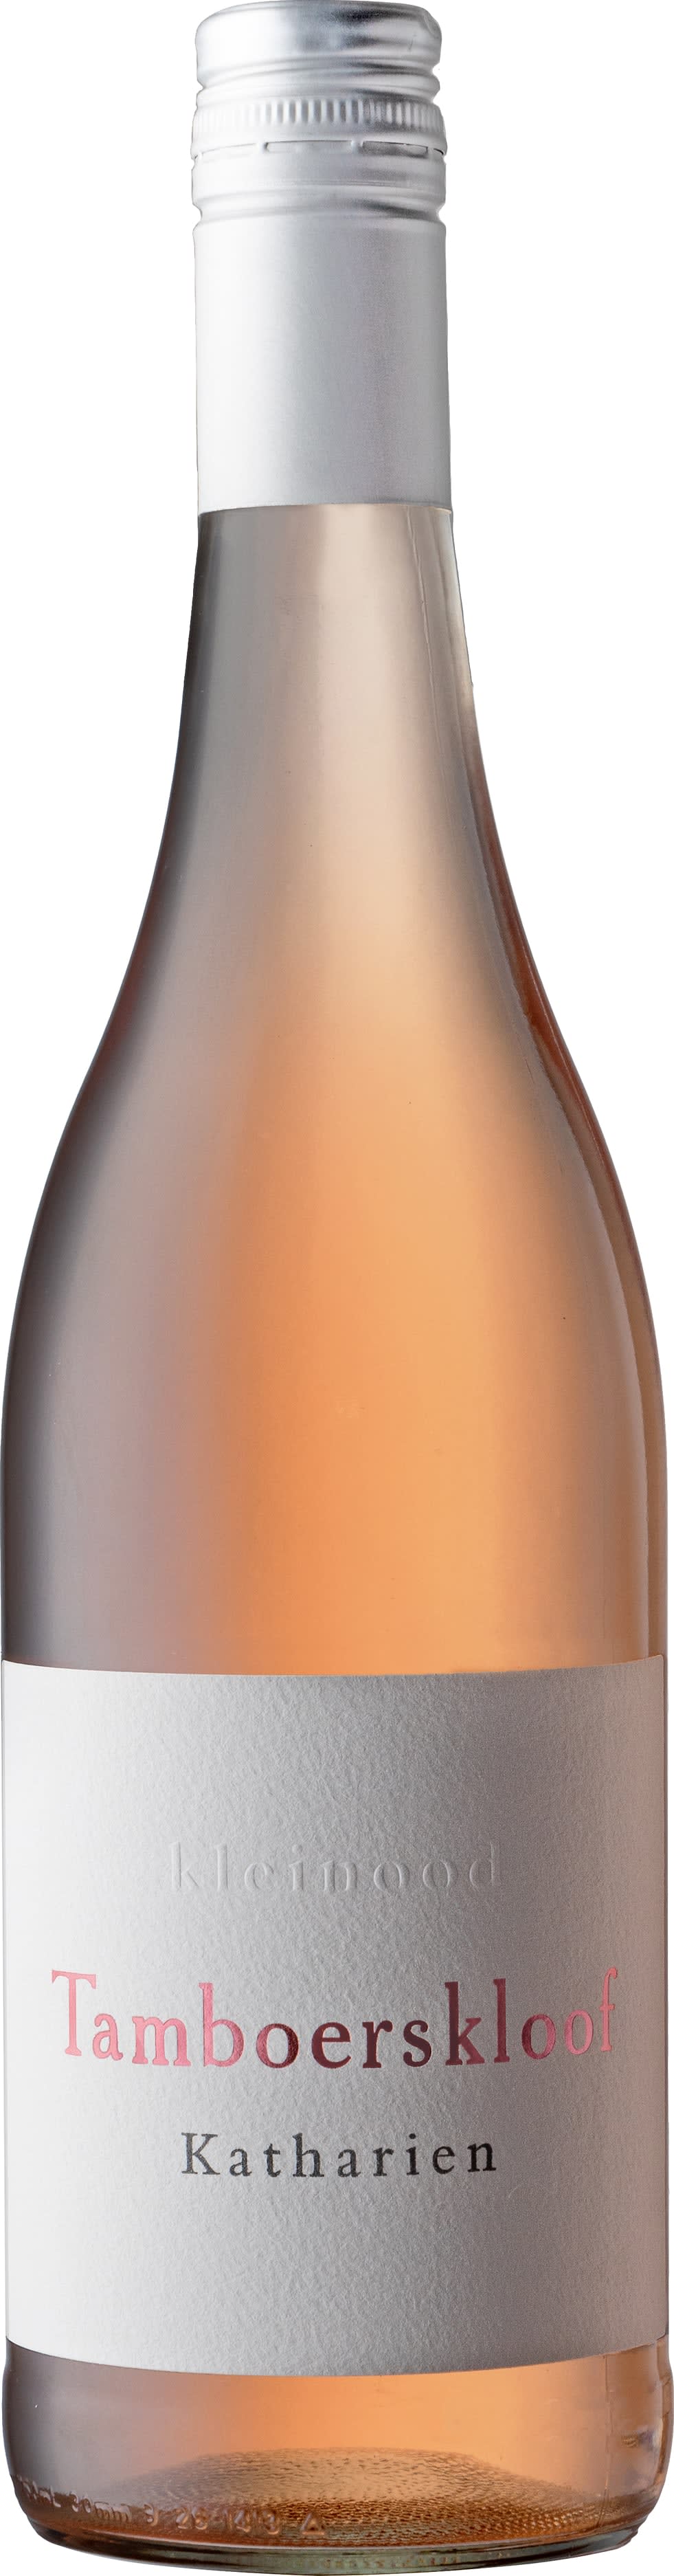 Kleinood Katharien Rose 2022 75cl - Buy Kleinood Wines from GREAT WINES DIRECT wine shop